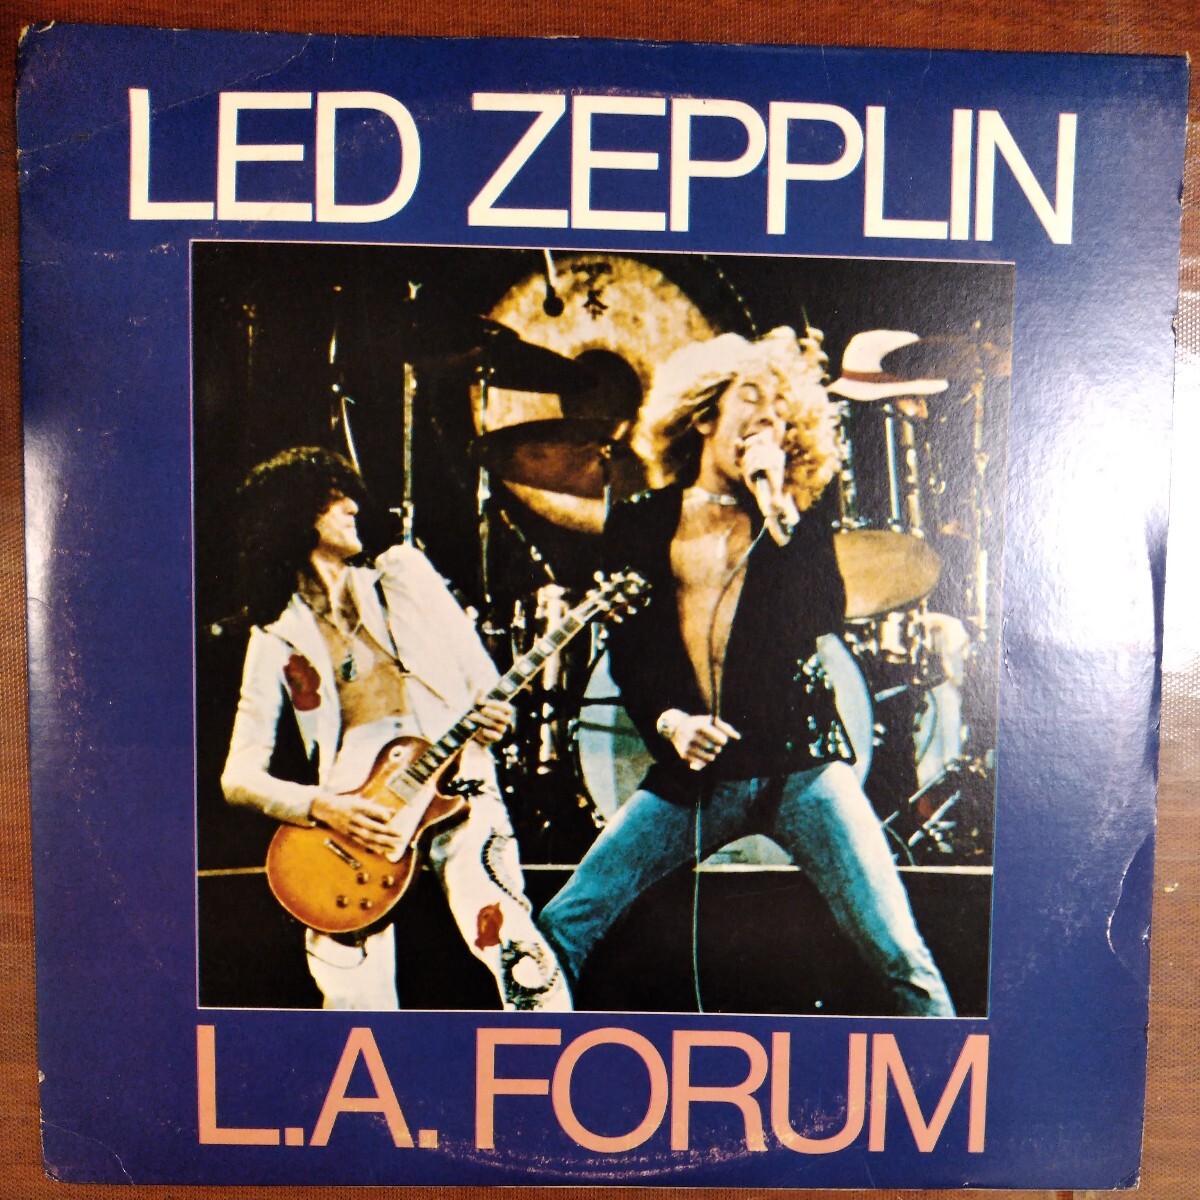 led zeppelin LA forum レッド・ツェッペリン live analog record vinly レコード アナログ LP_画像1